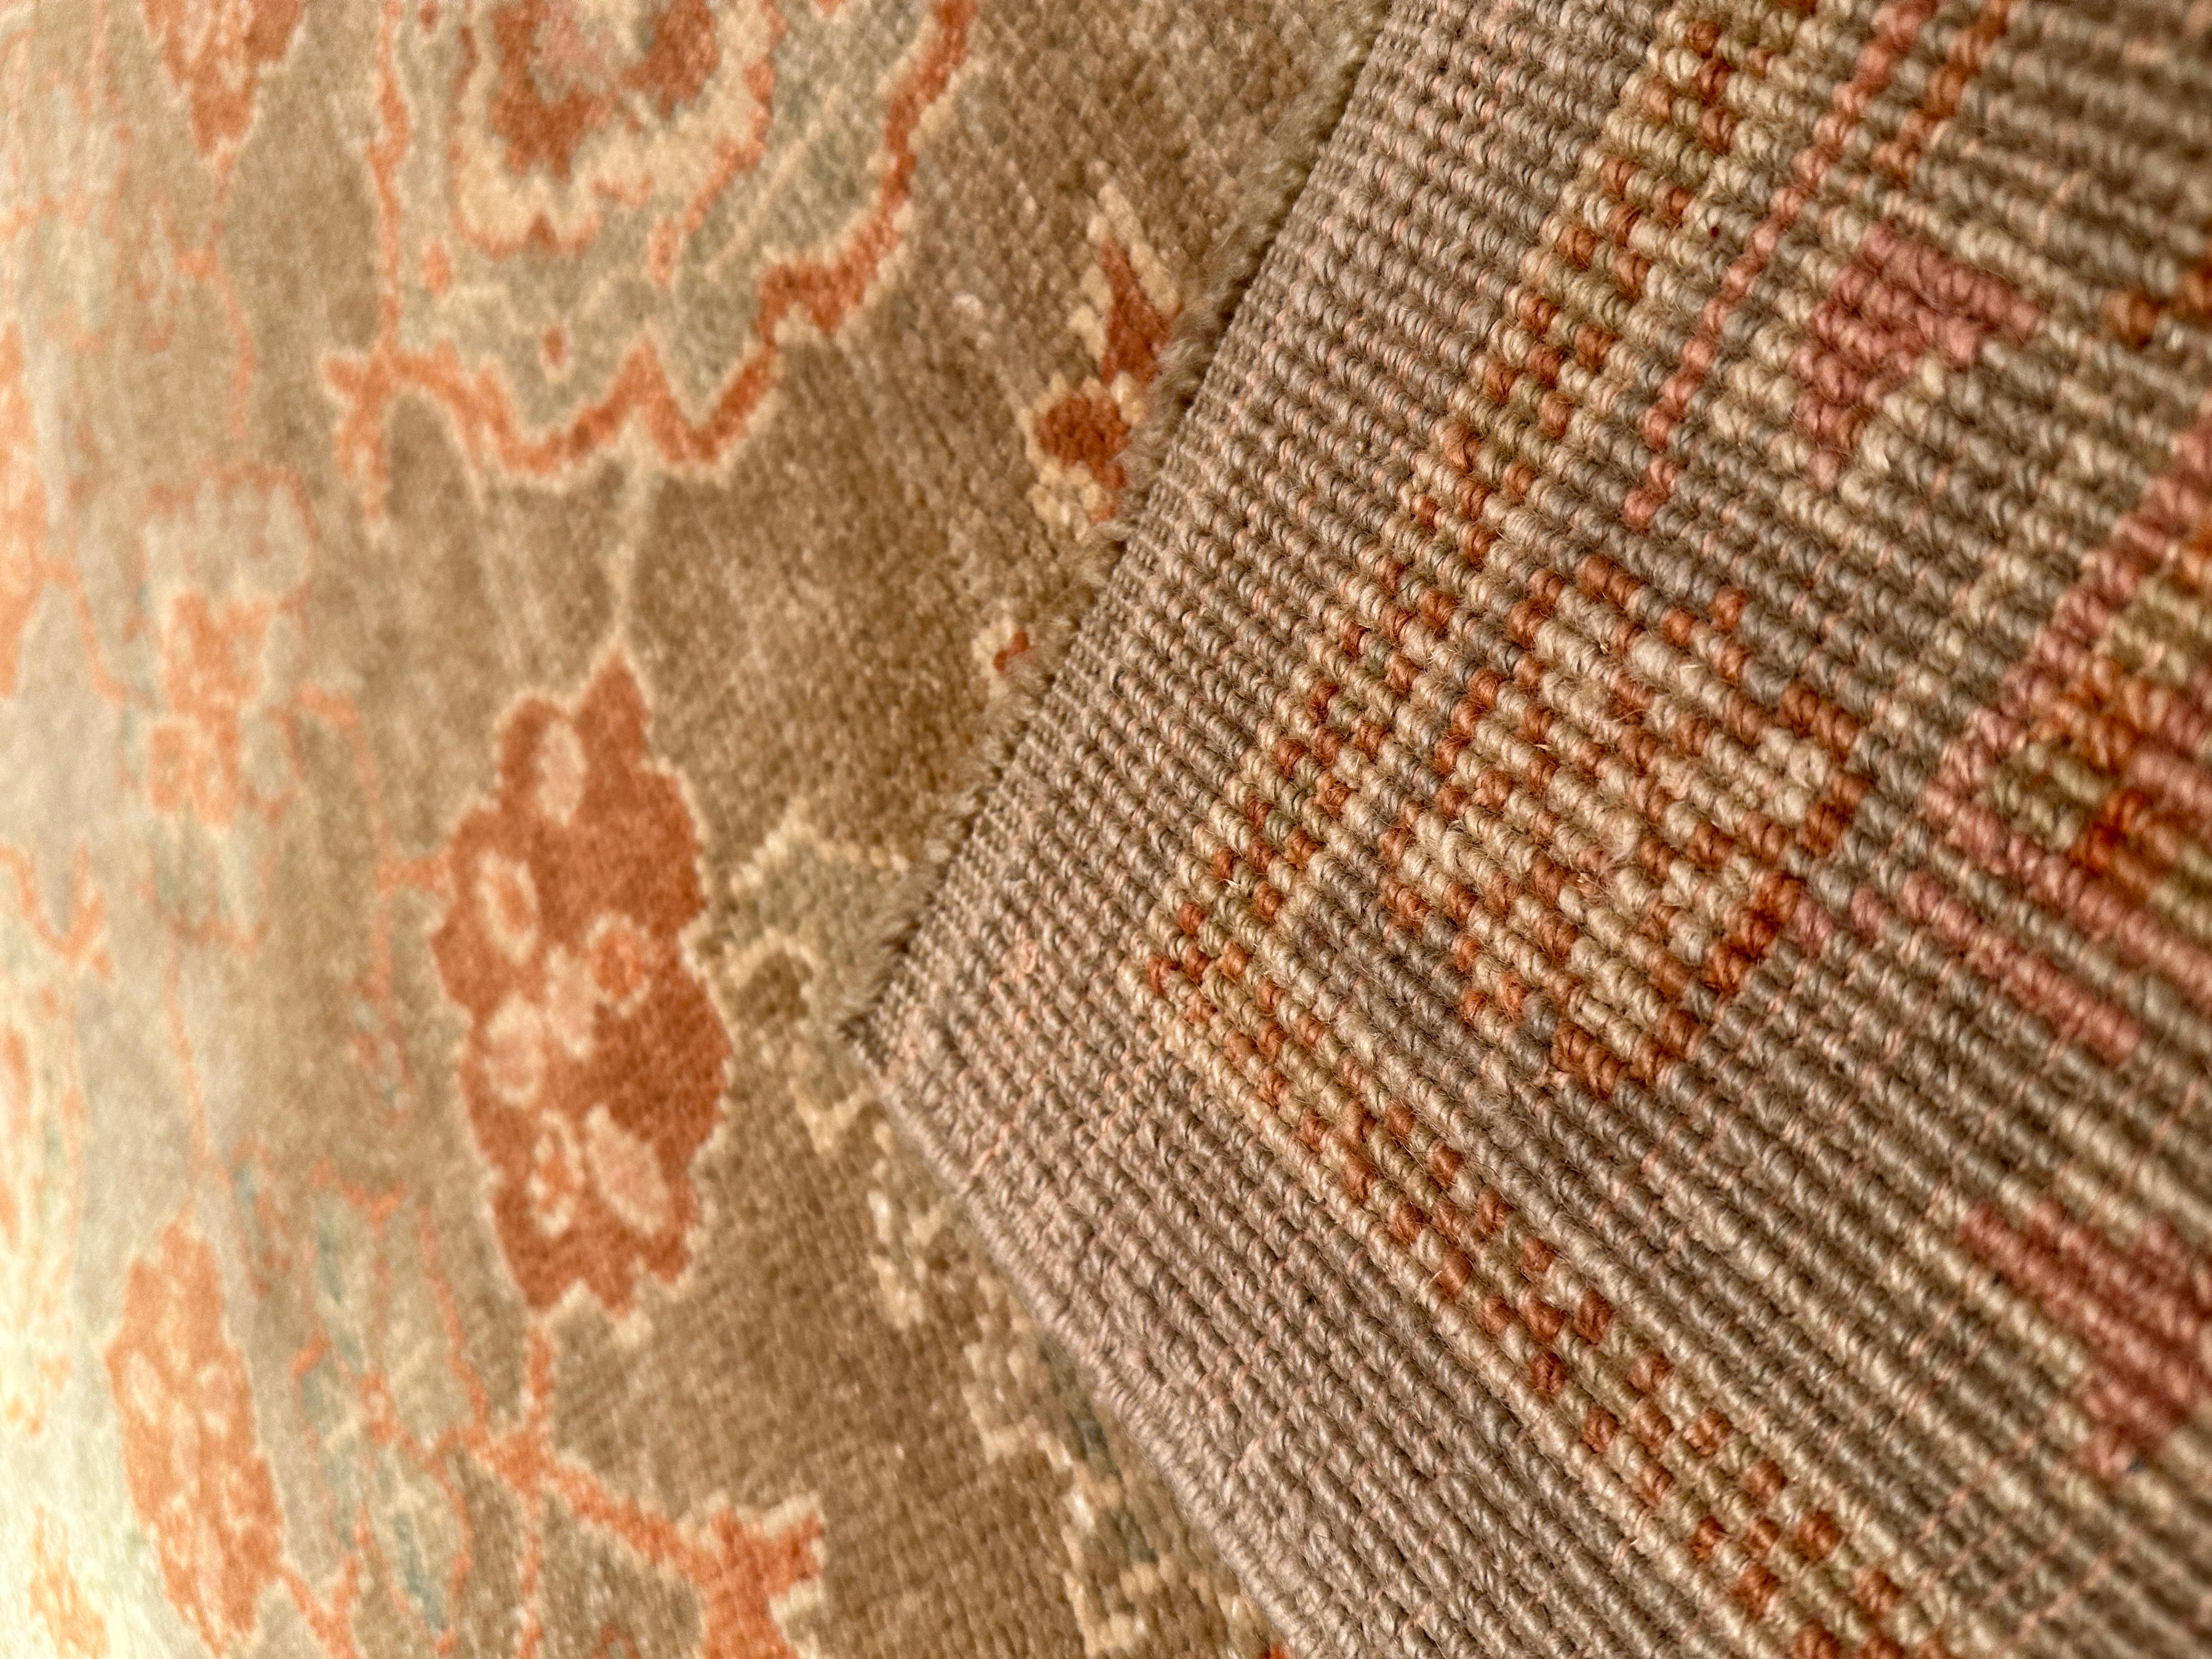 La ville d'Ushak, au nord de Denizli, est probablement l'un des centres de fabrication de tapis les plus importants et les plus réputés. Les tapis ont survécu depuis le XVIe siècle et peuvent être vus dans plusieurs musées. Au XVIIe siècle, de